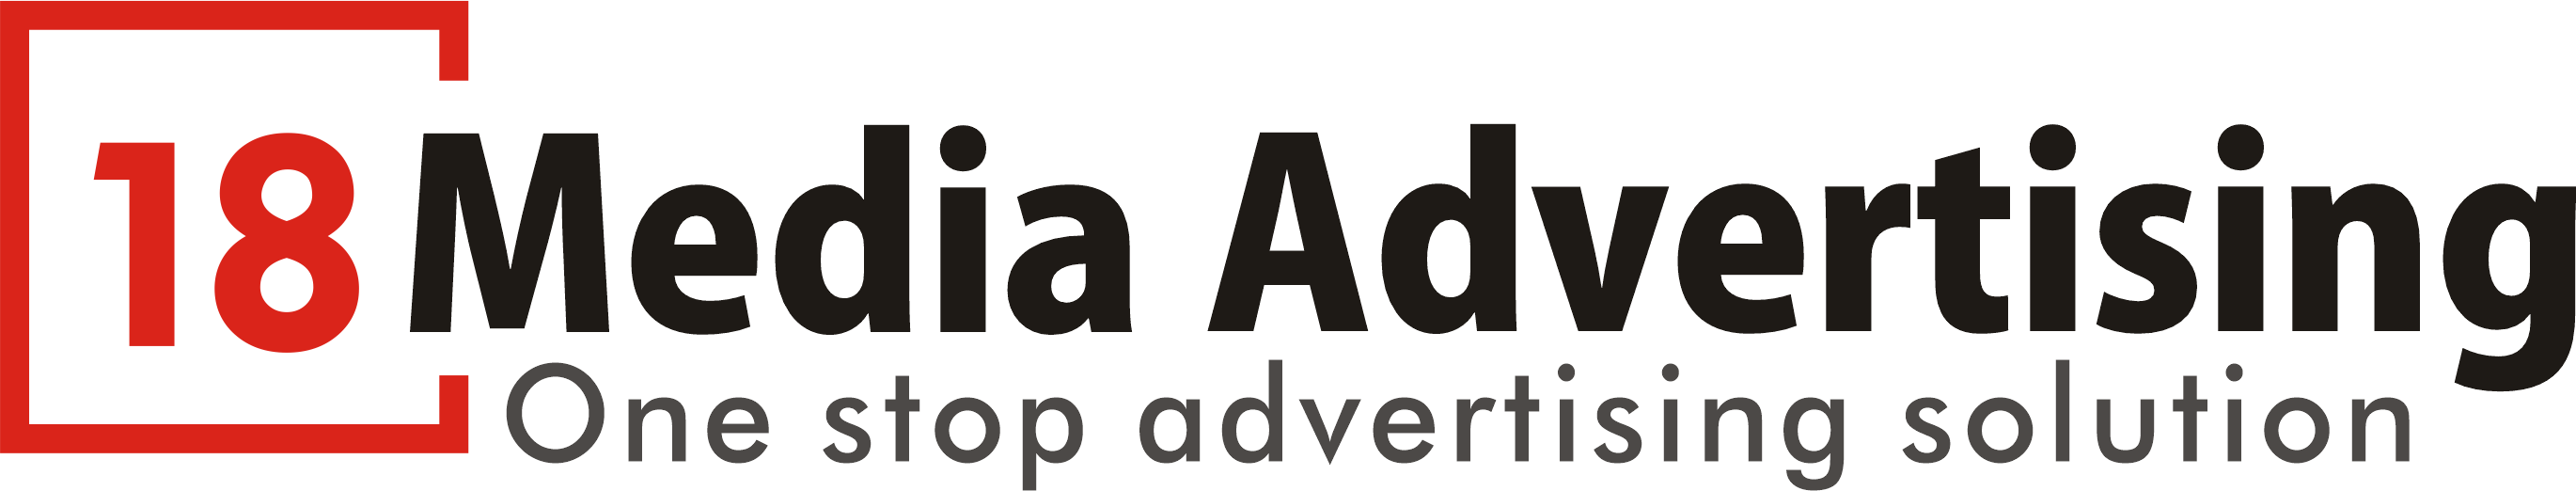 18 Media Advertising Agency